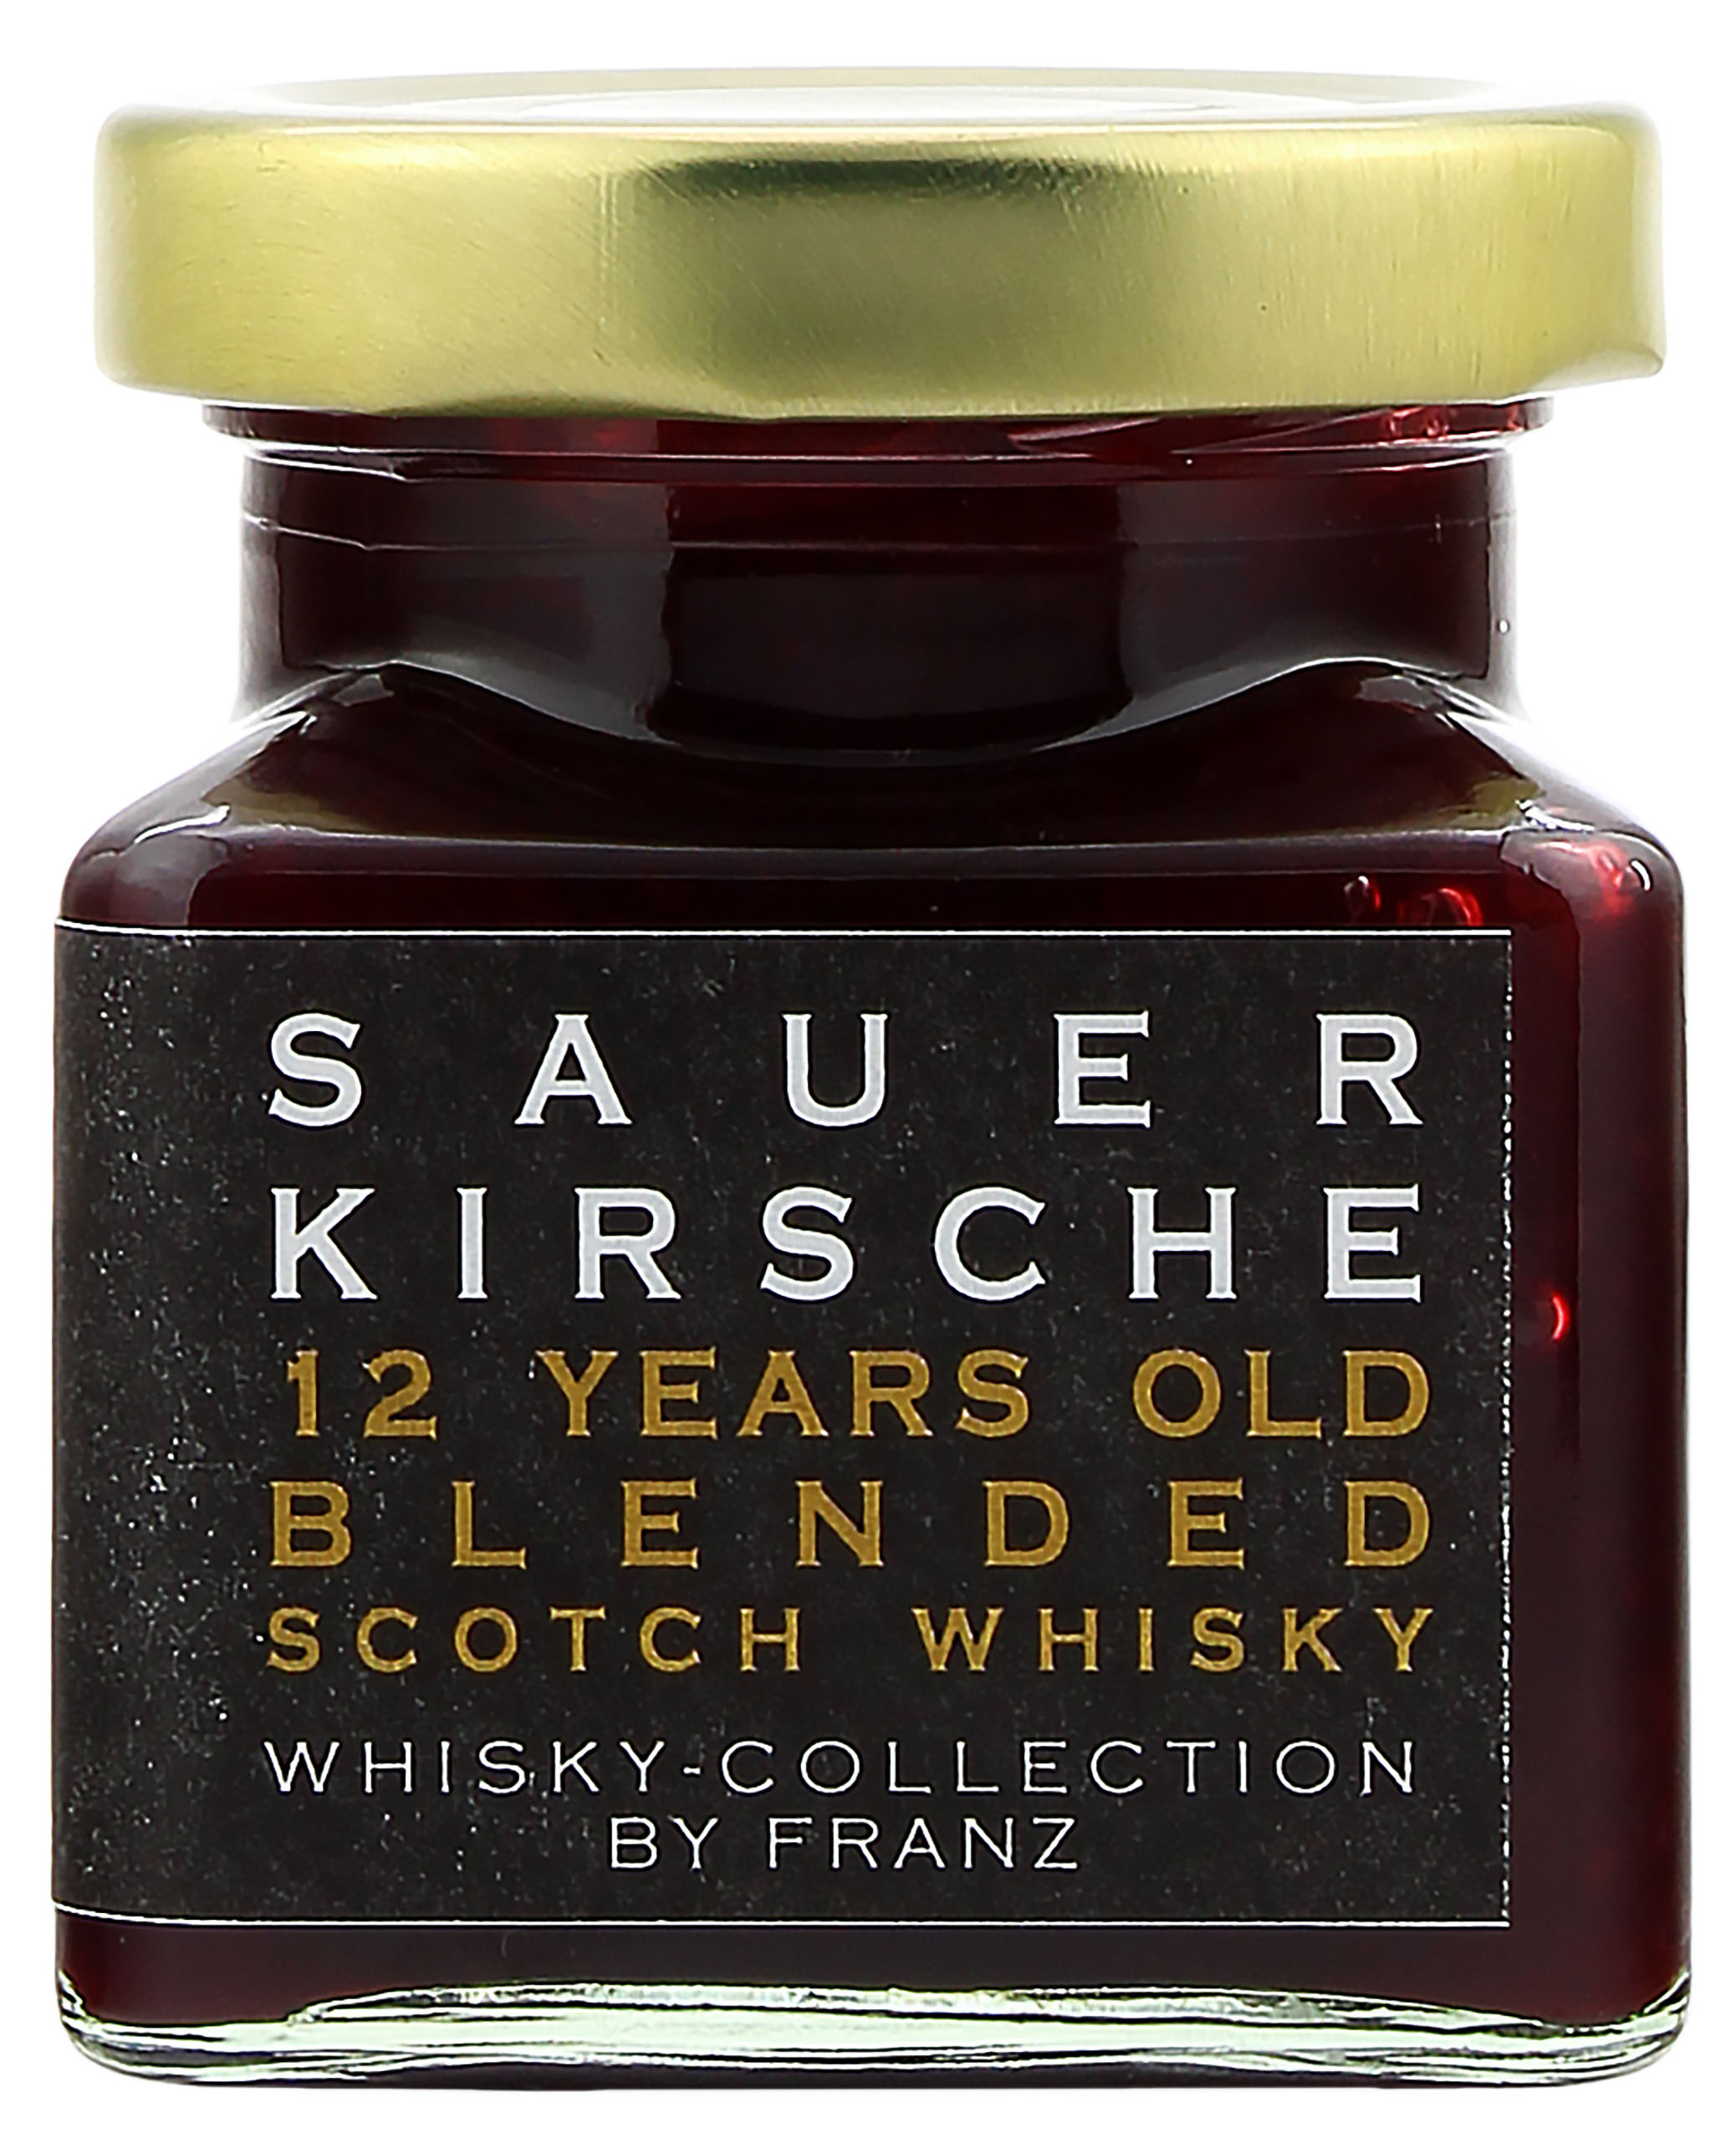 Sauerkirsche mit Blended Scotch Whisky 12 Jahre 150g